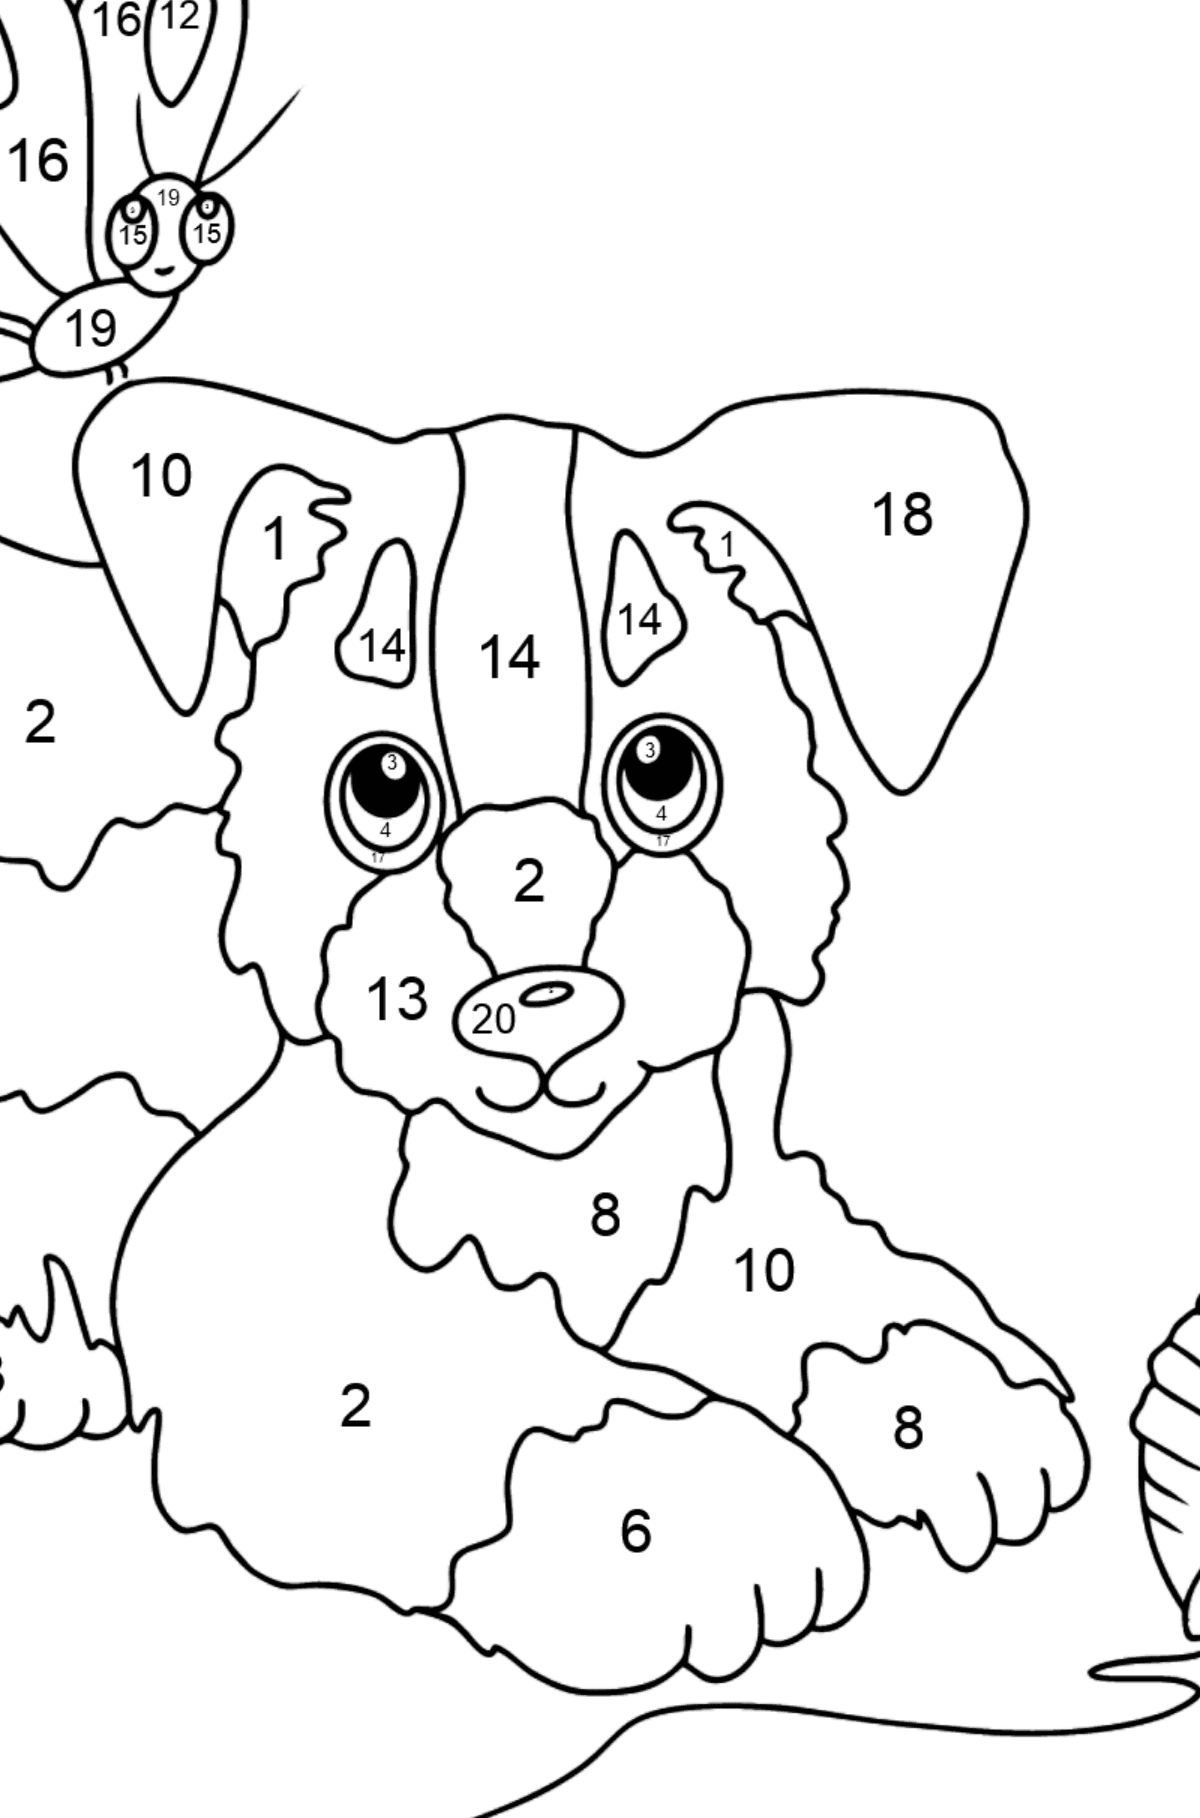 Dibujo para Colorear - Un Perro está Jugando con un Bola de Estambre y con Mariposas - Colorear por Números para Niños